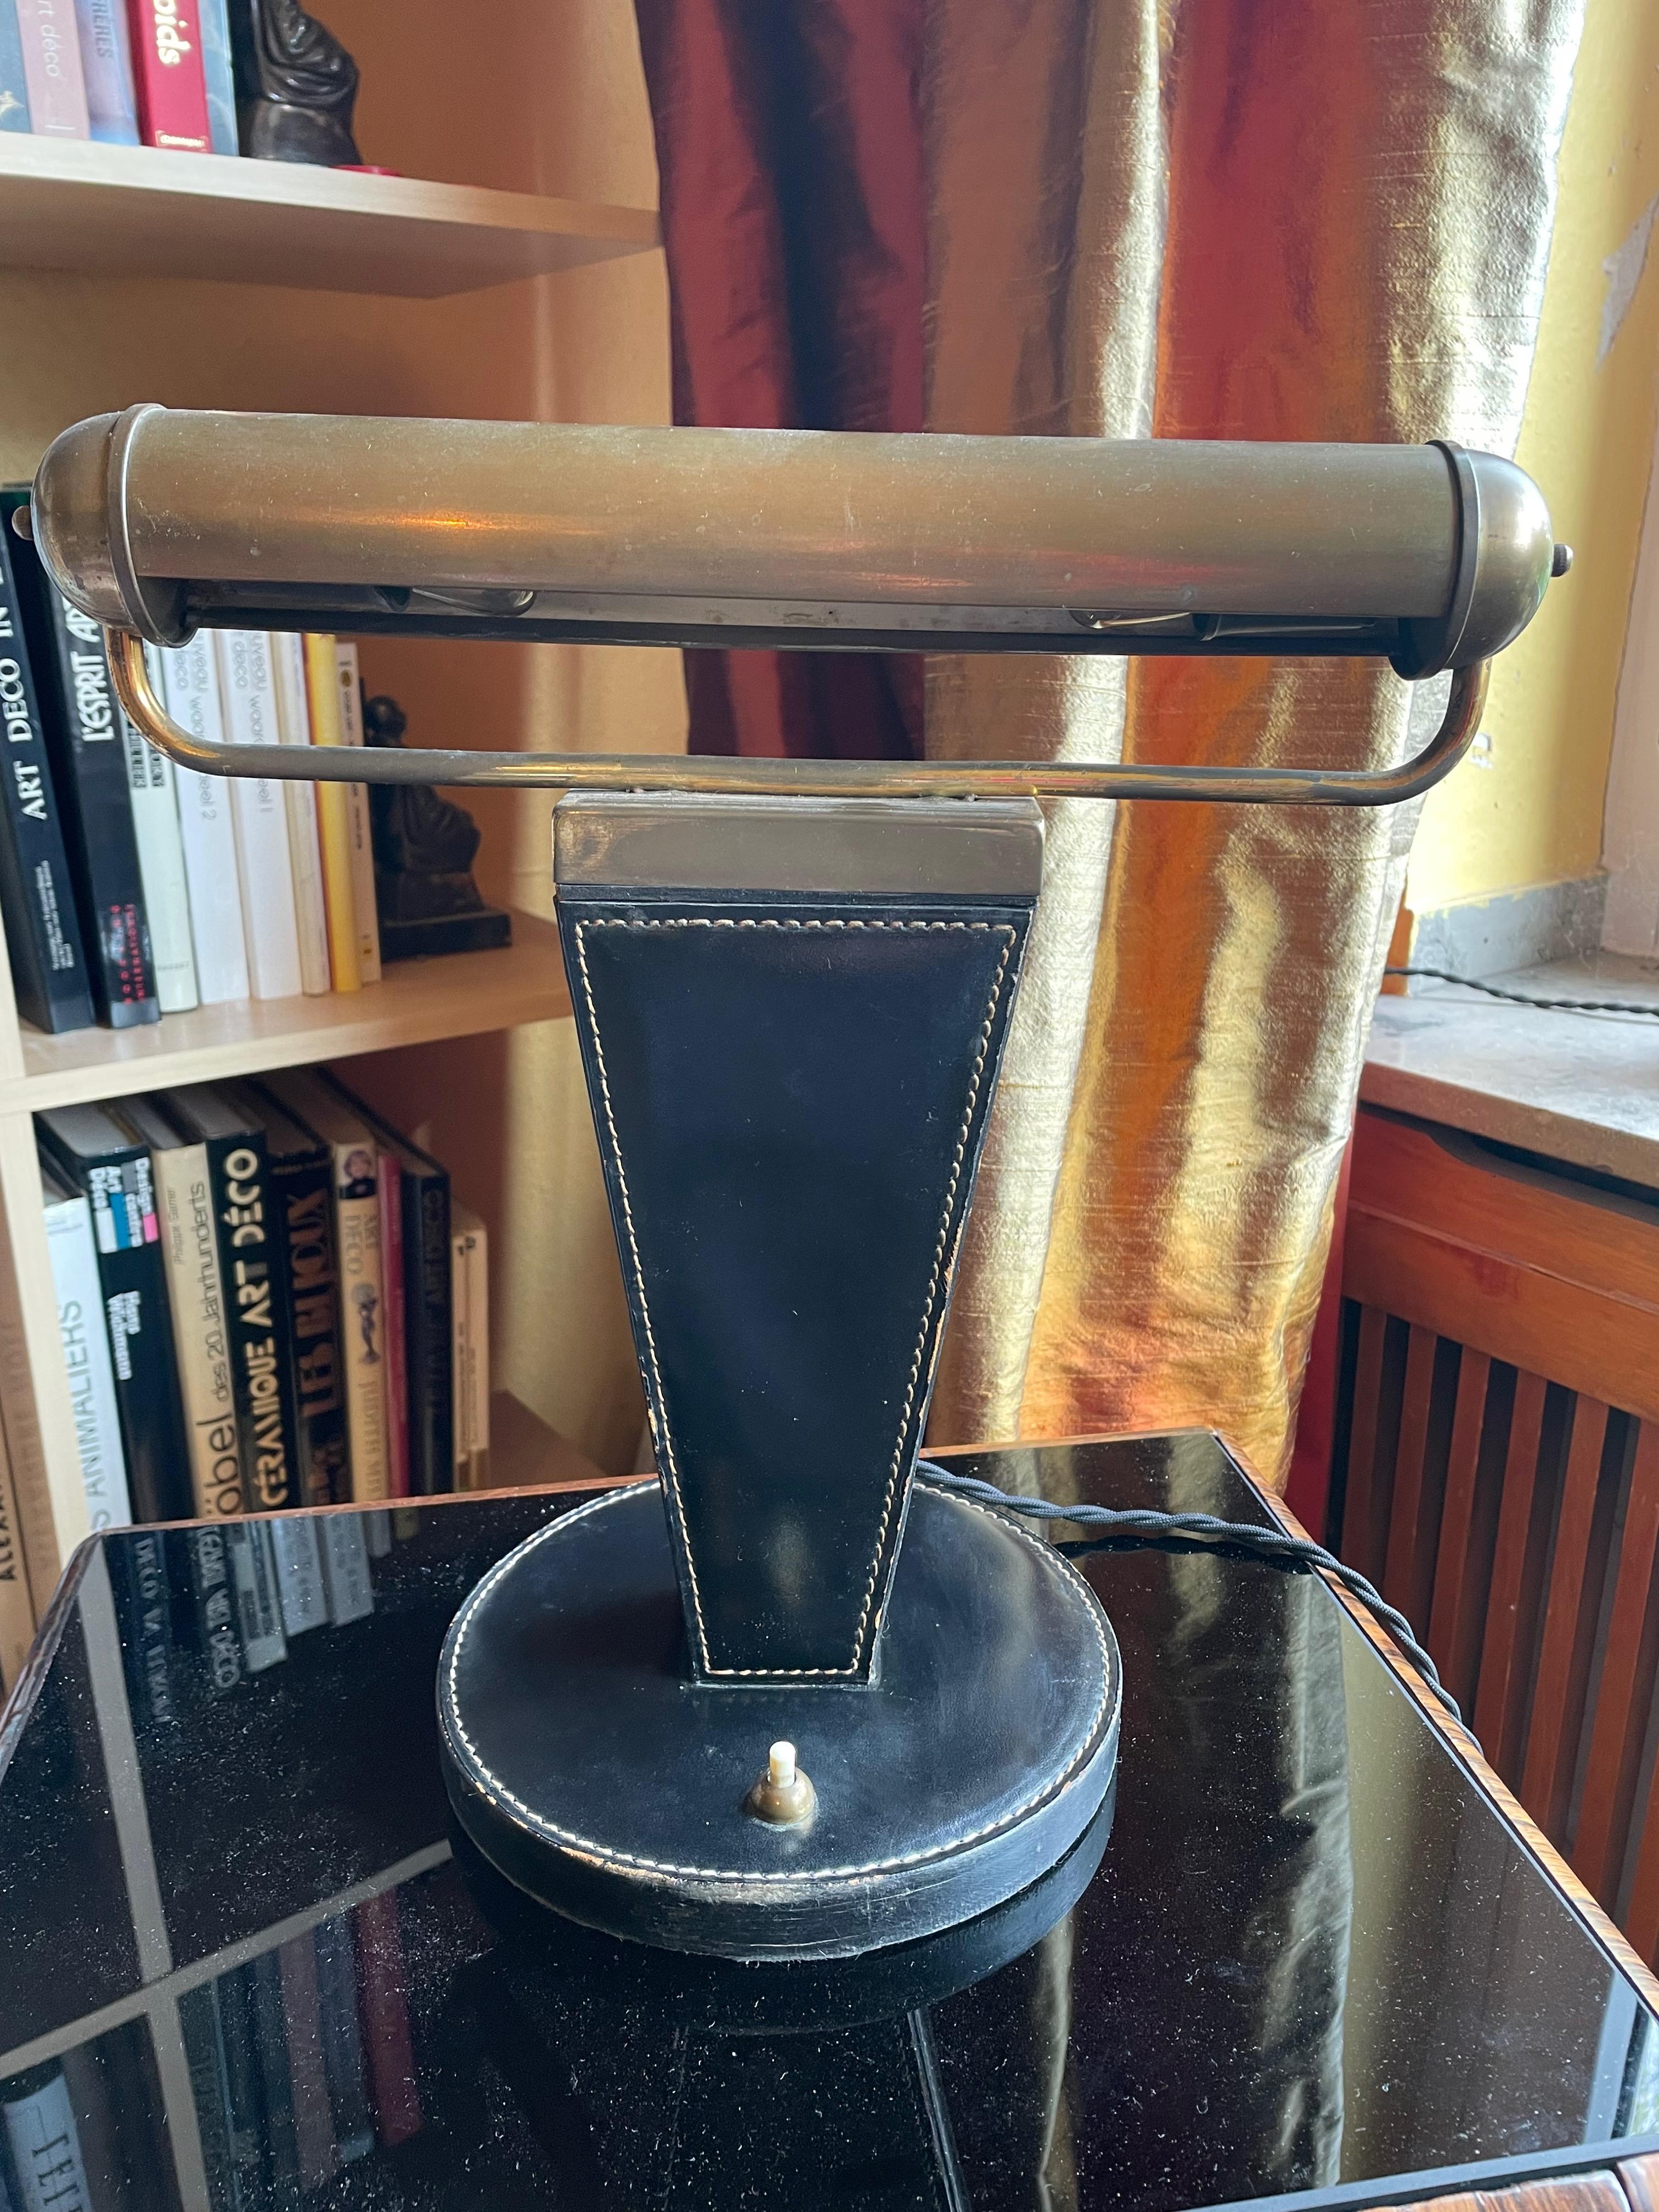 Rarissime lampe de table Art Déco française des années 30/40 par Jacques Adnet. 
Beau design, bon état général, légères traces d'usage dans le laiton dues à l'âge. Légèrement frotté.
Cette lampe de table rare est dans l'état d'origine de la fin de